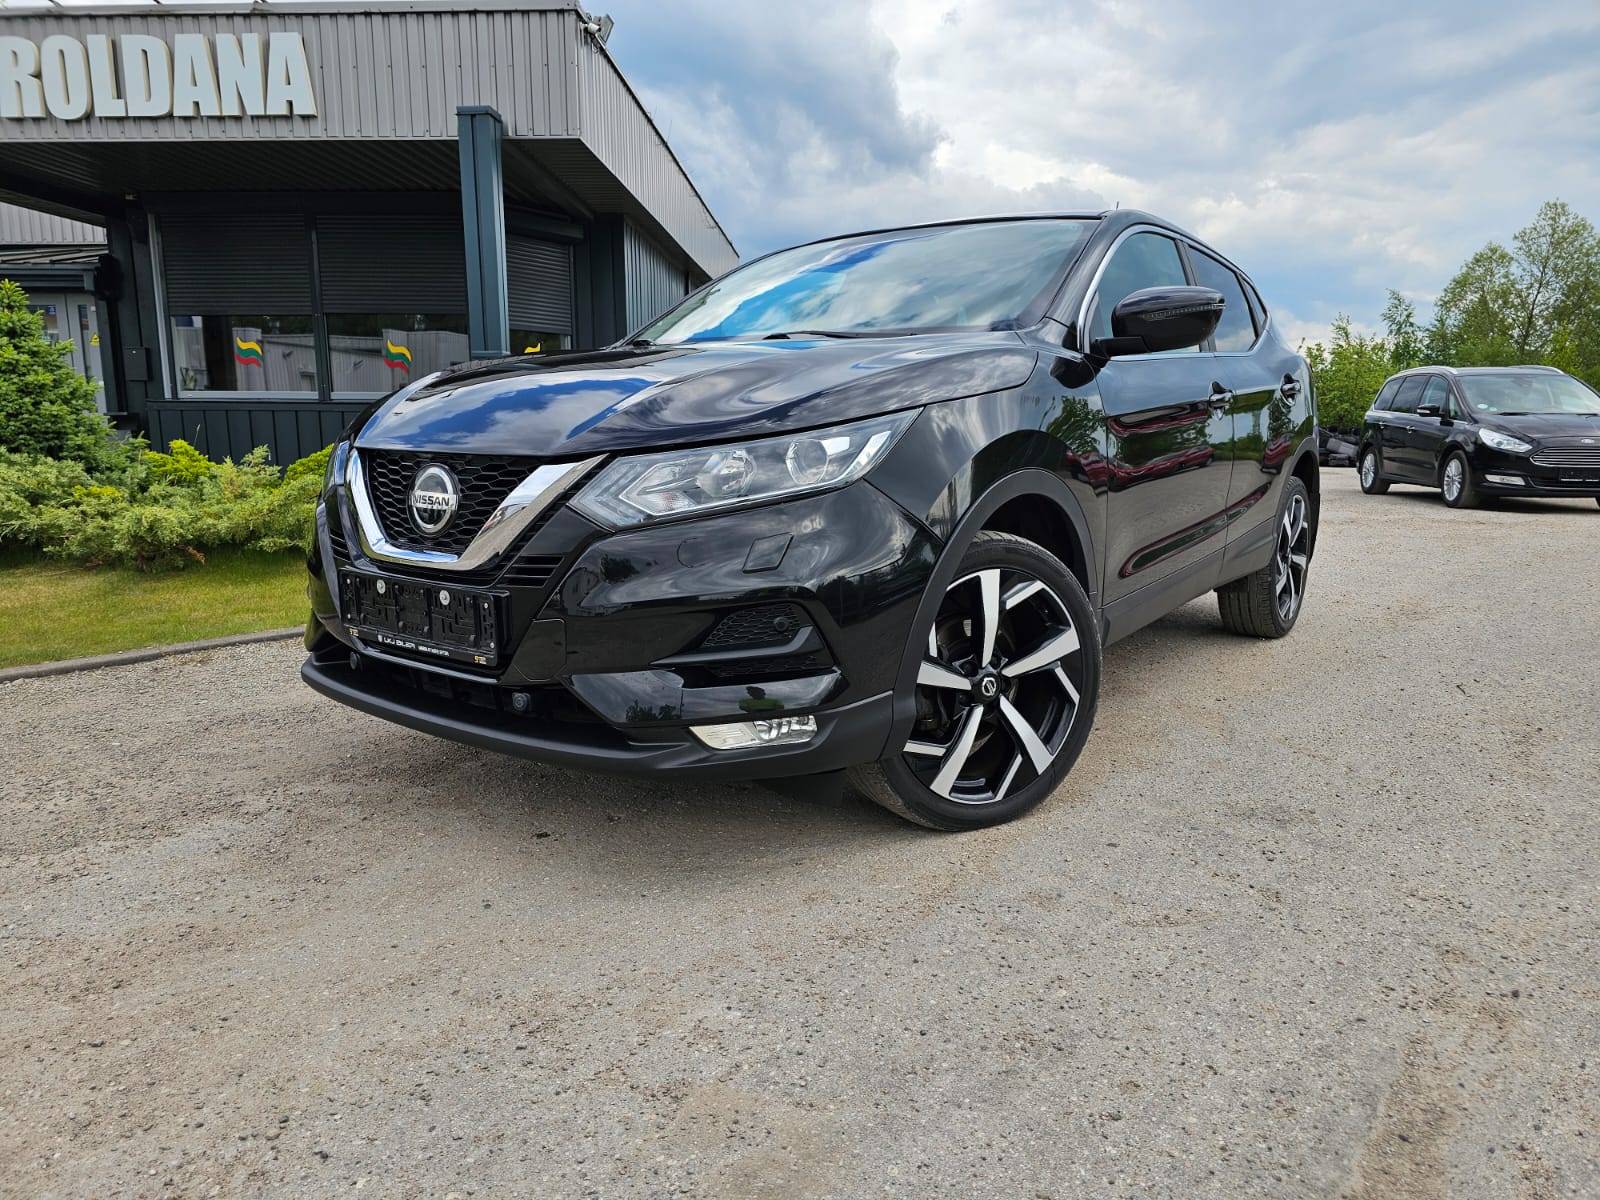 Nissan Qashqai, 1.3 l., visureigis / krosoveris, 2019-06/naudoti automobiliai/Roldana